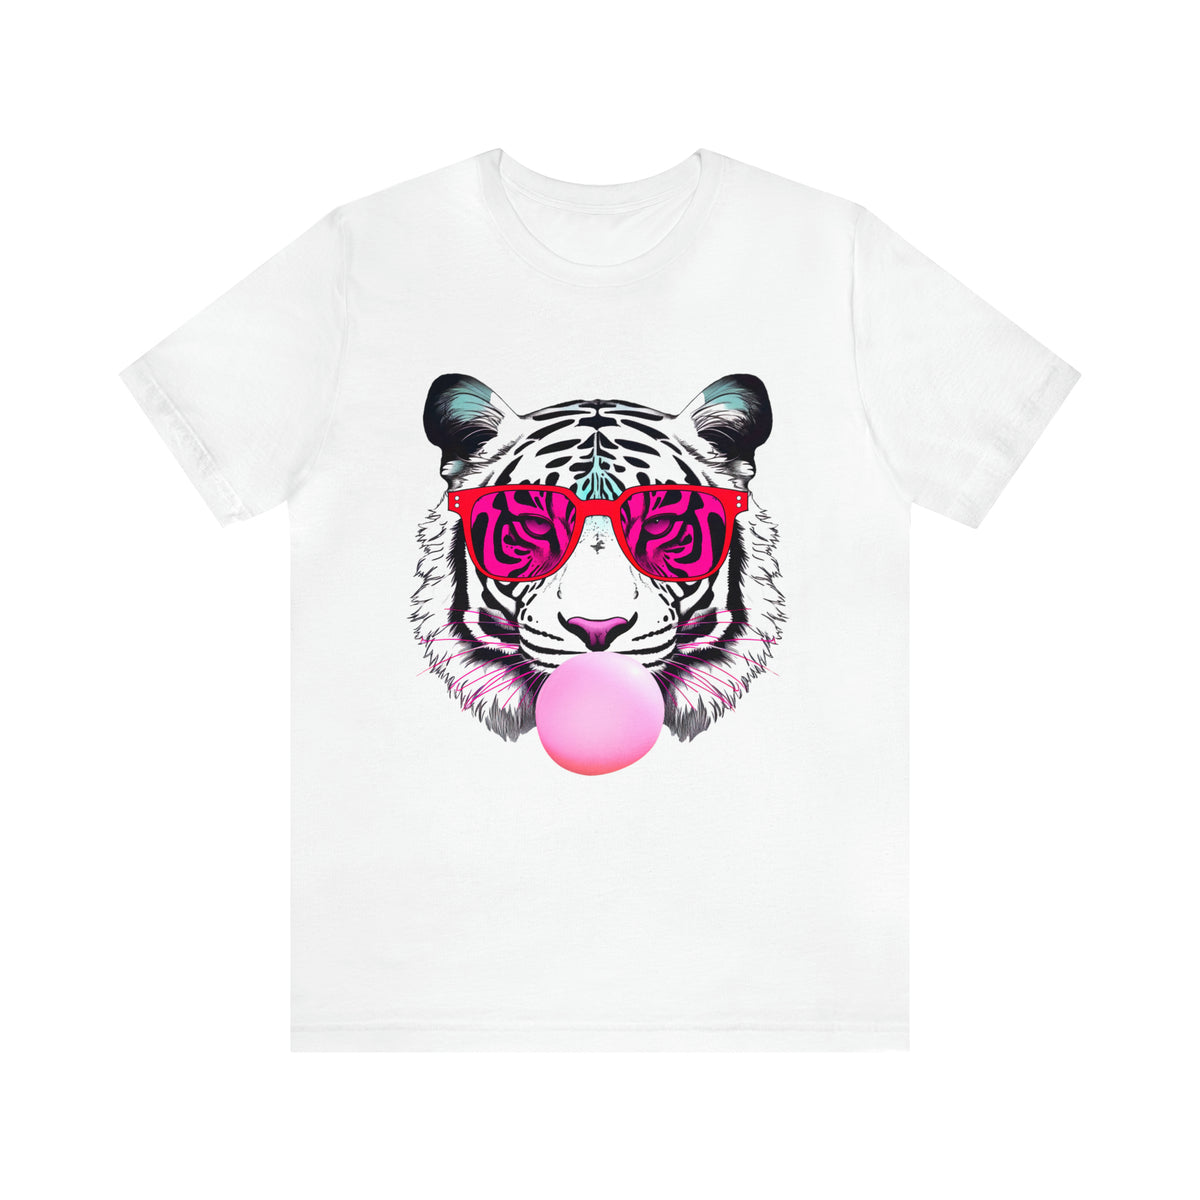 Bubblegum Pink Tiger Shirt | Tiger Face Shirt | Pop Art Shirt | Gift for Animal Lover Summer Shirt | Unisex Jersey T-shirt